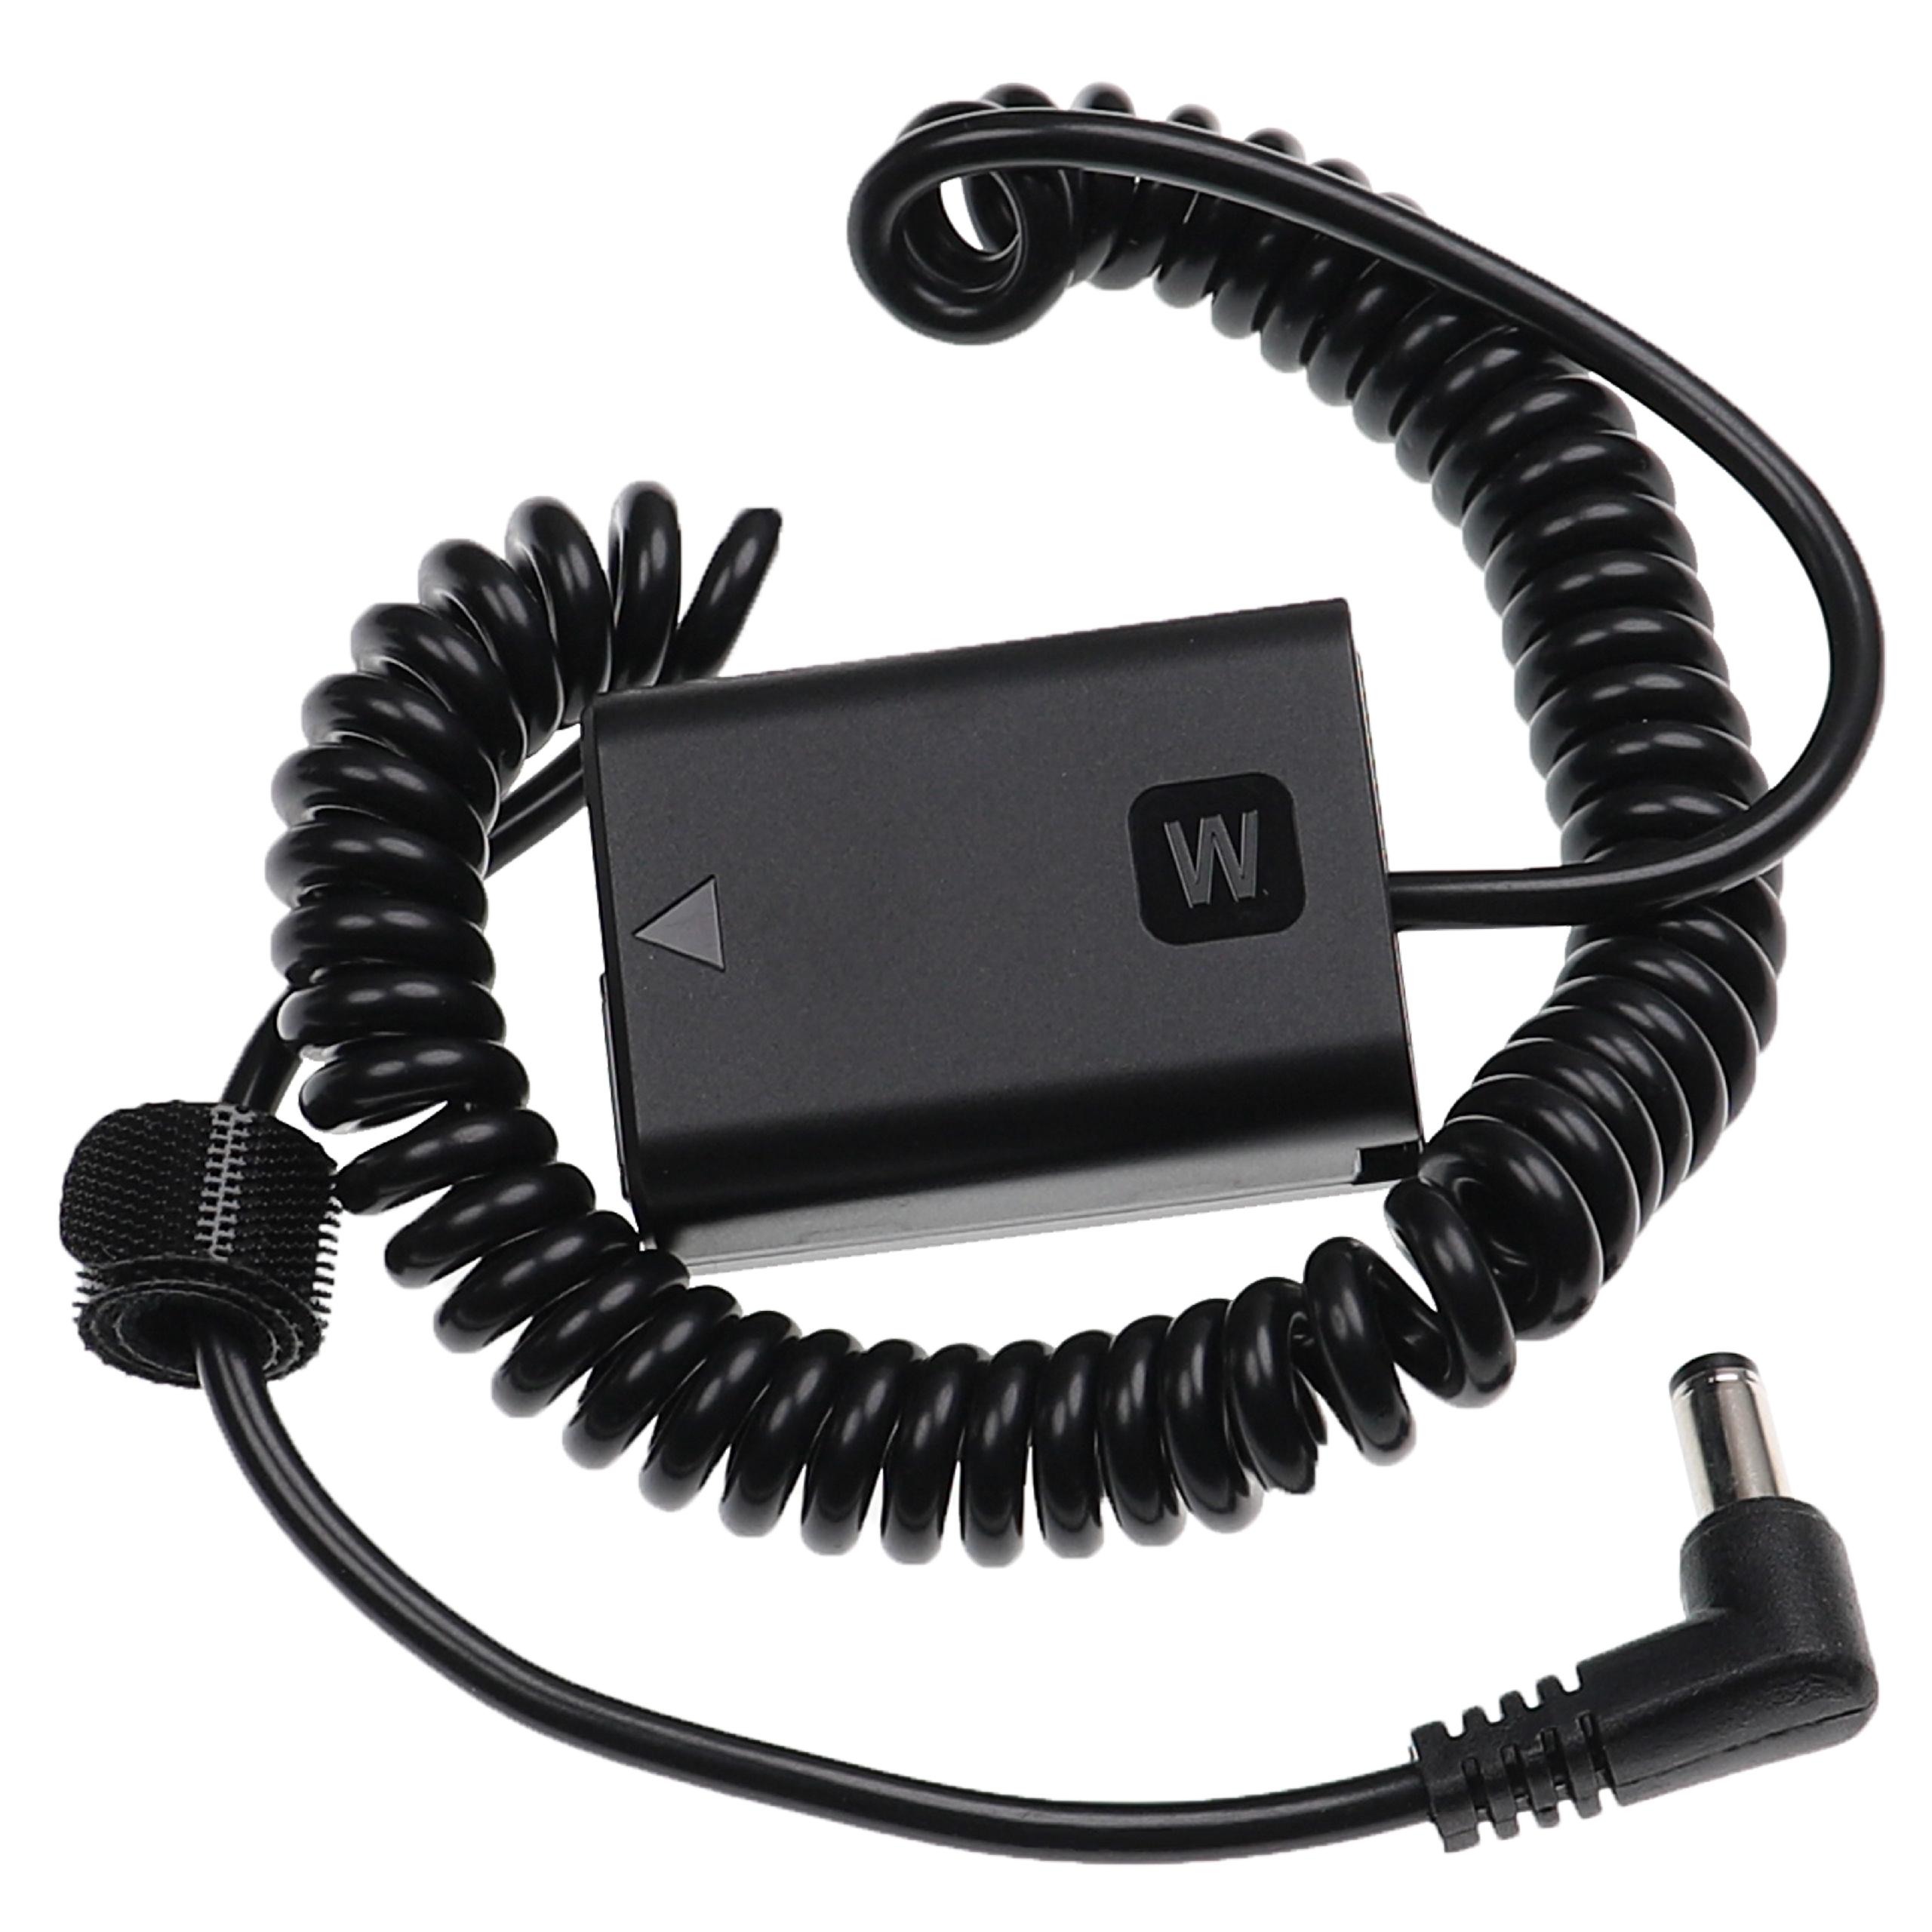 Coupleur DC remplace Sony NP-FW50 pour appareil photo Sony – 120 cm, câble spirale